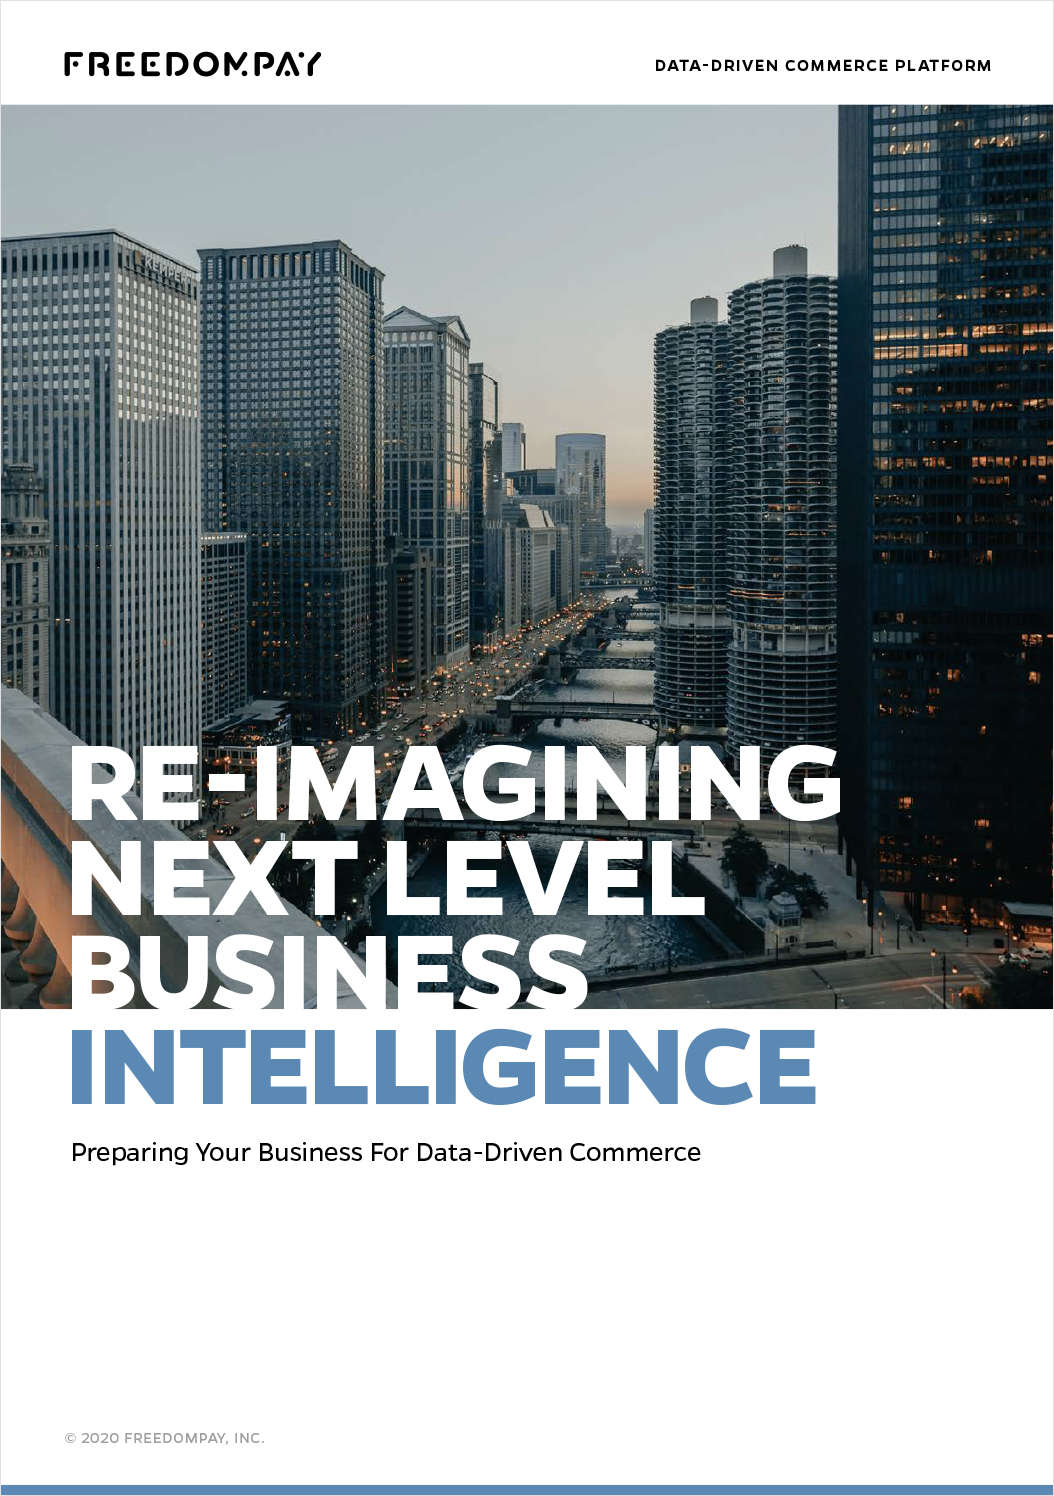 Re-imagining Next Level Business Intelligence